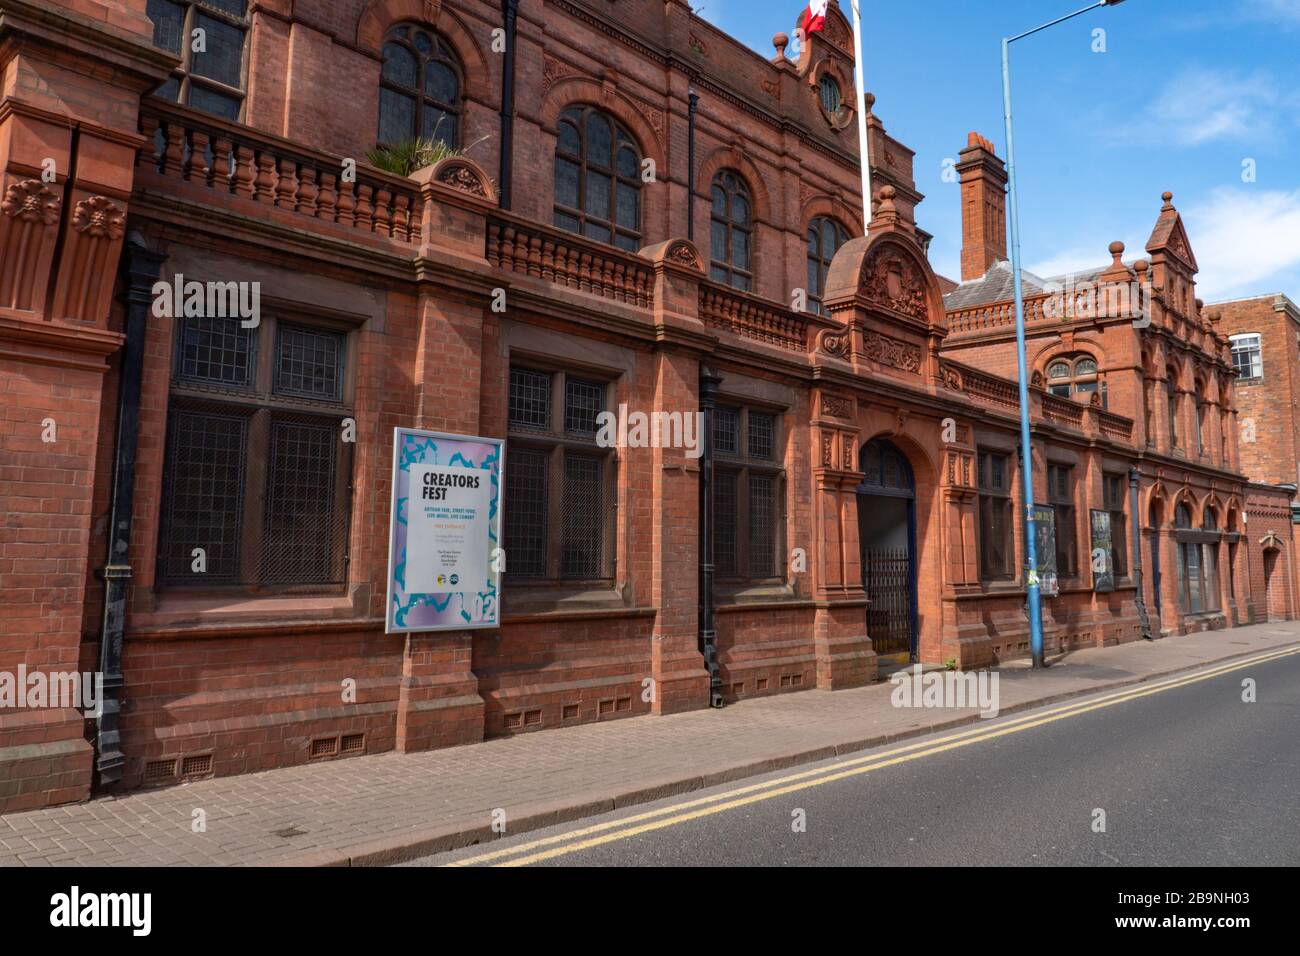 Hôtel de ville de Stourbridge, fermé en raison d'une pandémie de coronavirus. West Midlands. Mars 2020 Banque D'Images